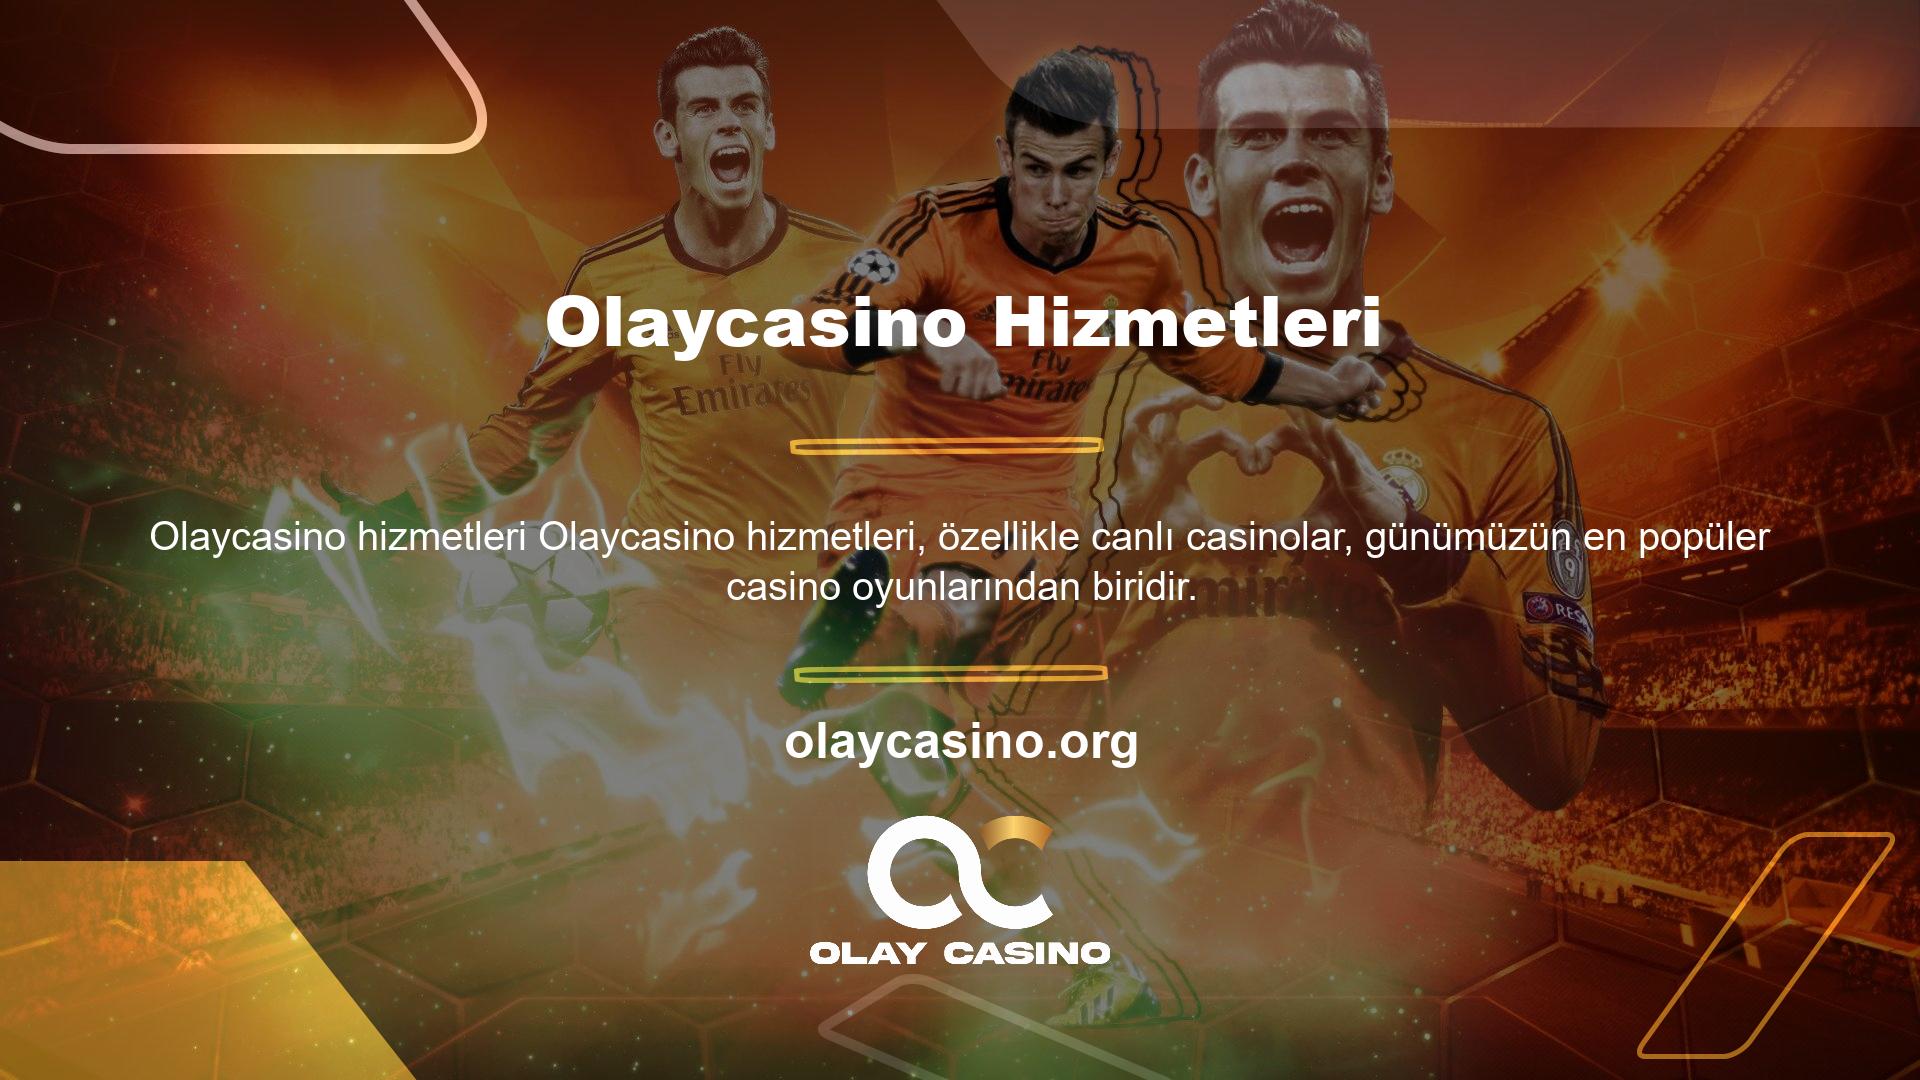 İnsanların zihninde bir oyun haline gelen Canlı Casino Olaycasino, dijital ortamda pek çok kişinin aradığı oyun türüdür